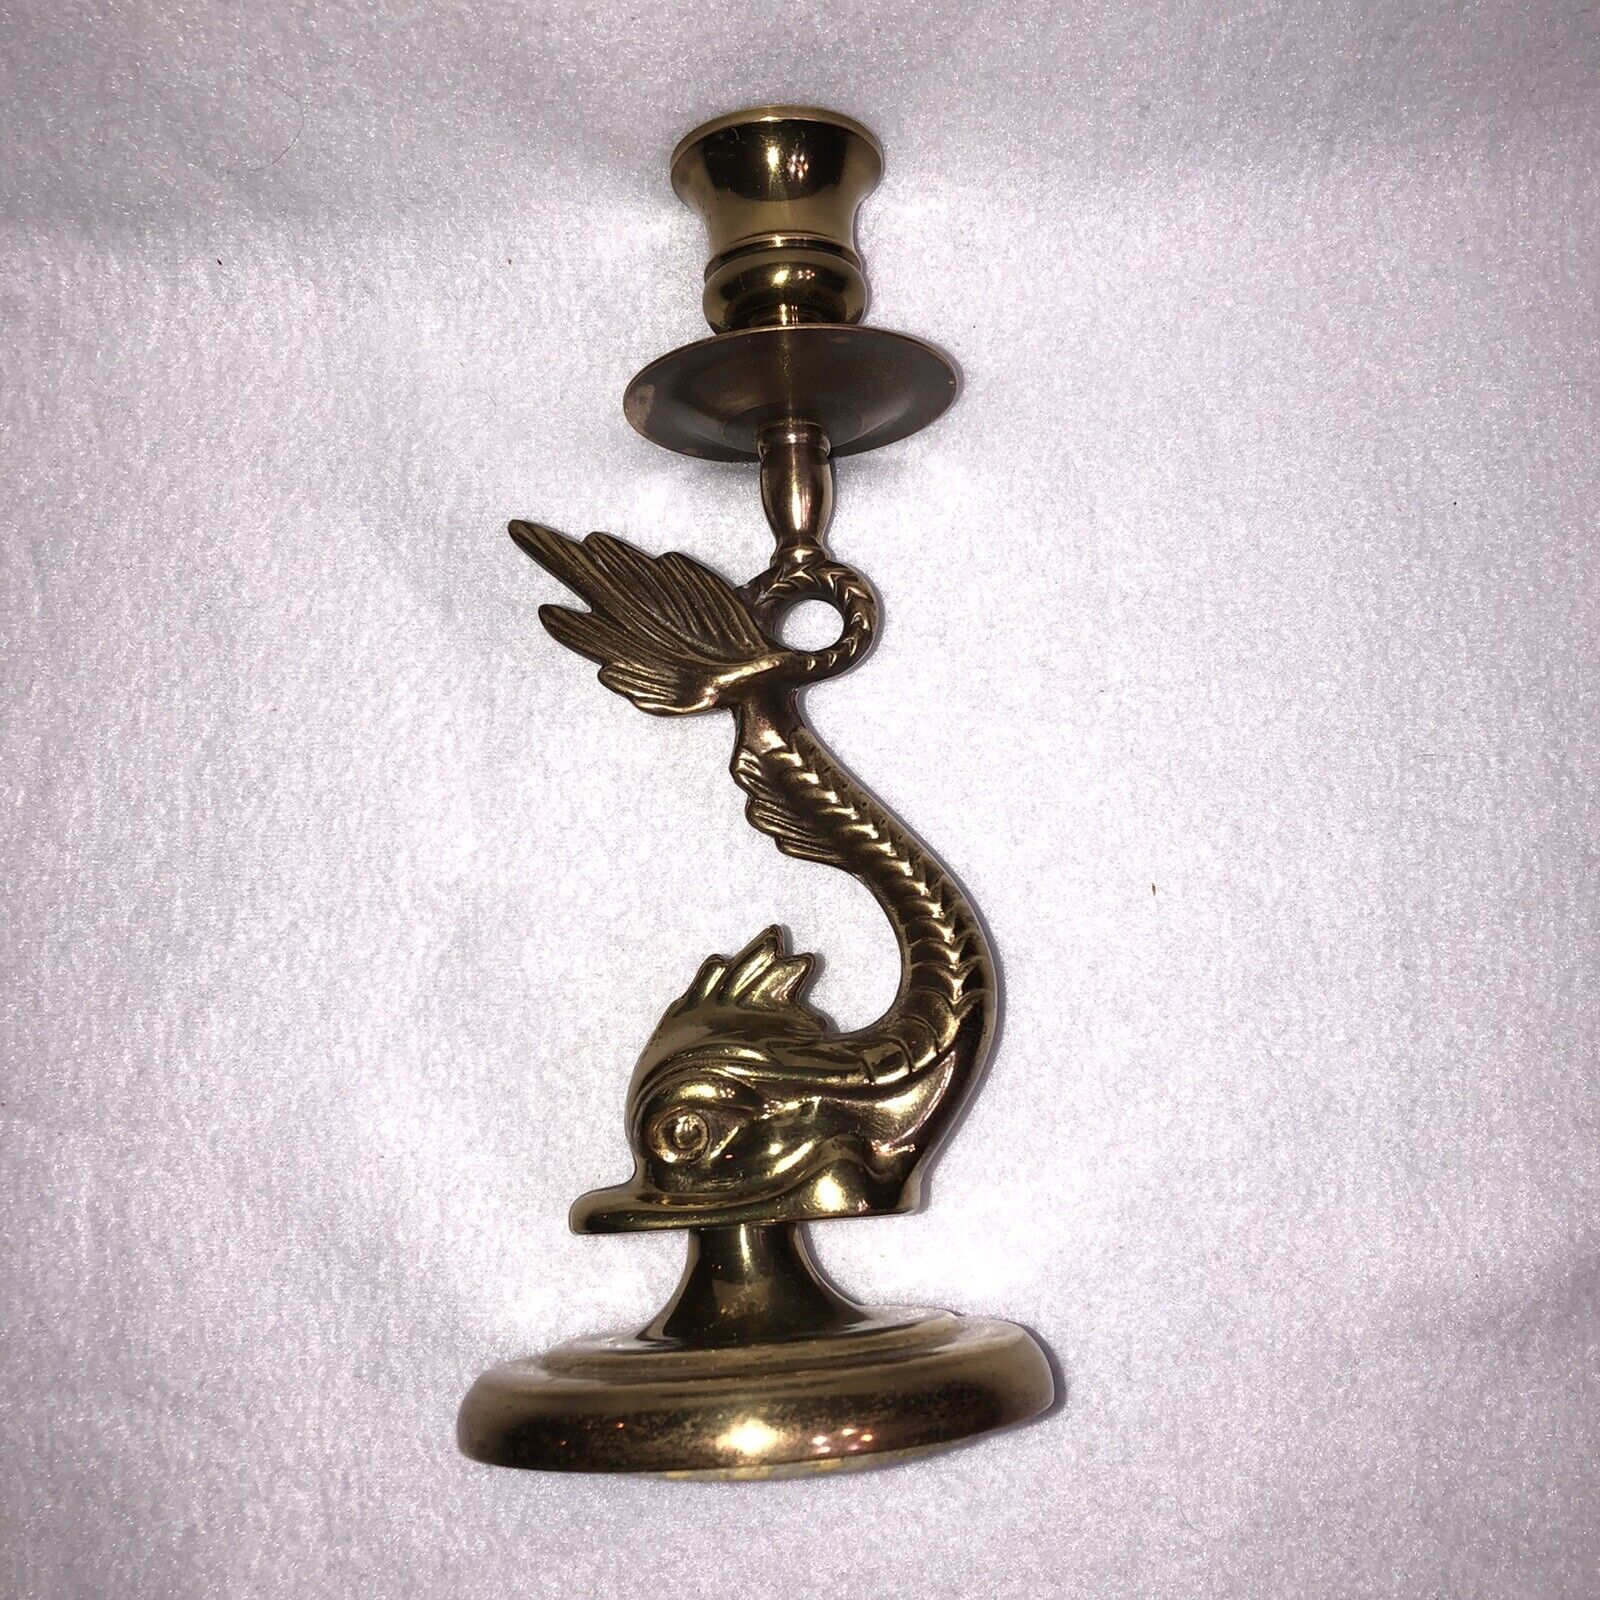 Vintage Ethan Allen 8” Solid Brass Sea Serpent Koi Fish Nessie Candlestick USA